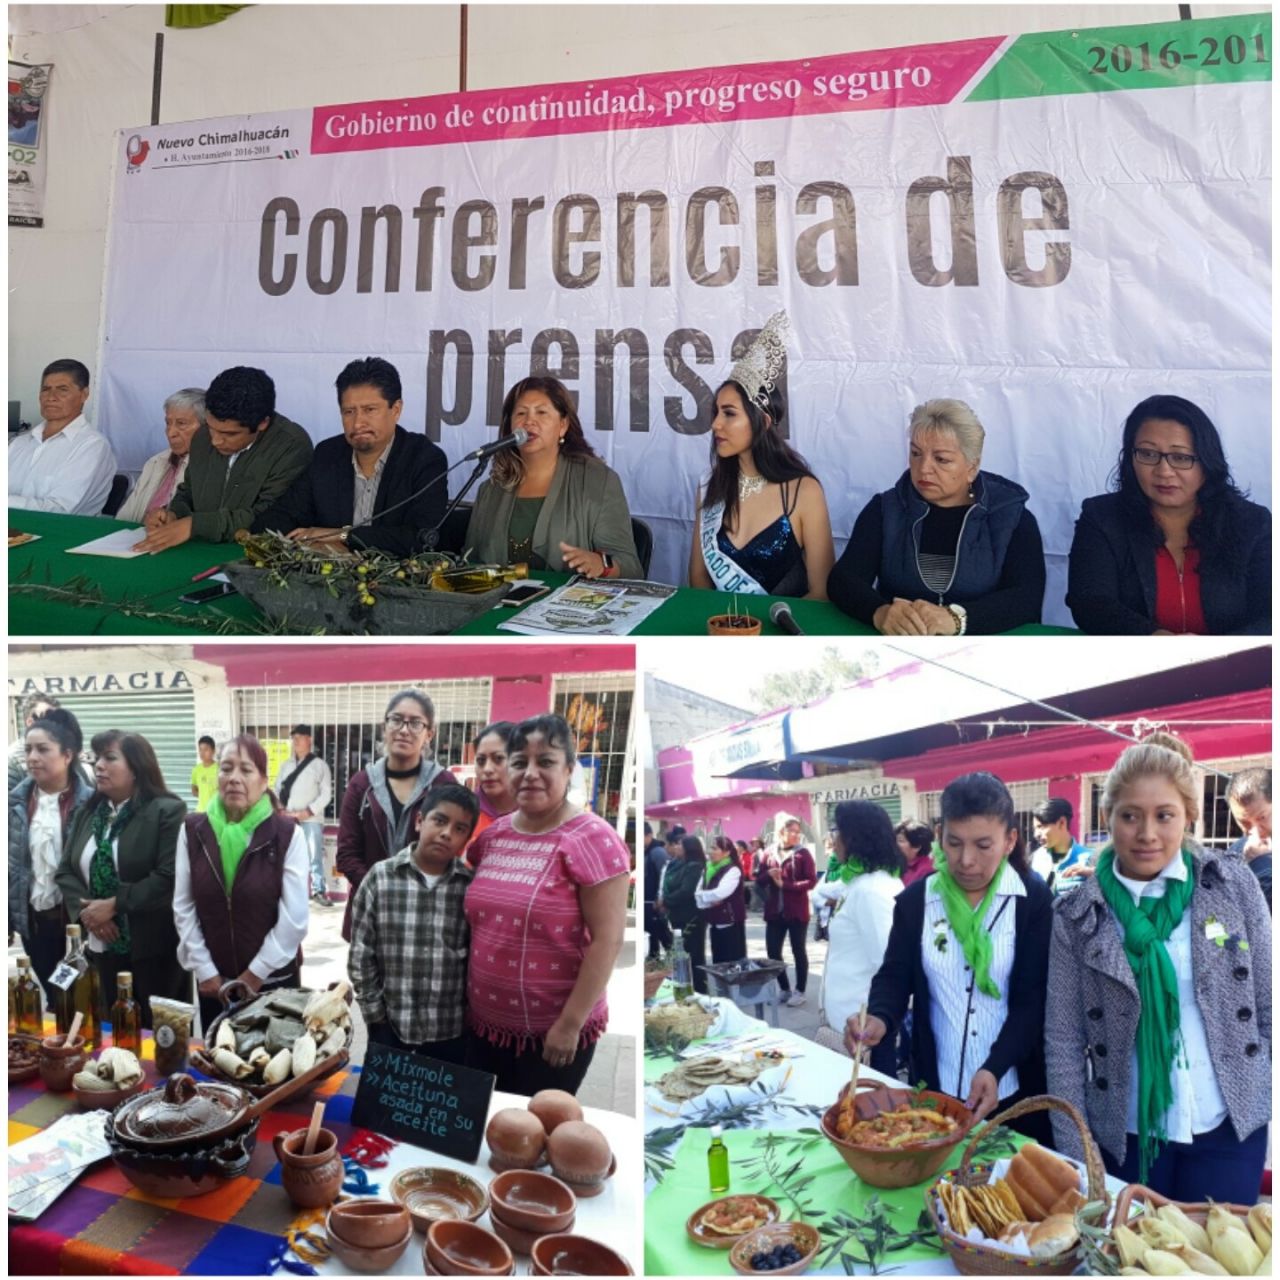 Del 29 de noviembre al 2 de diciembre la Feria del olivo en Chimalhuacán